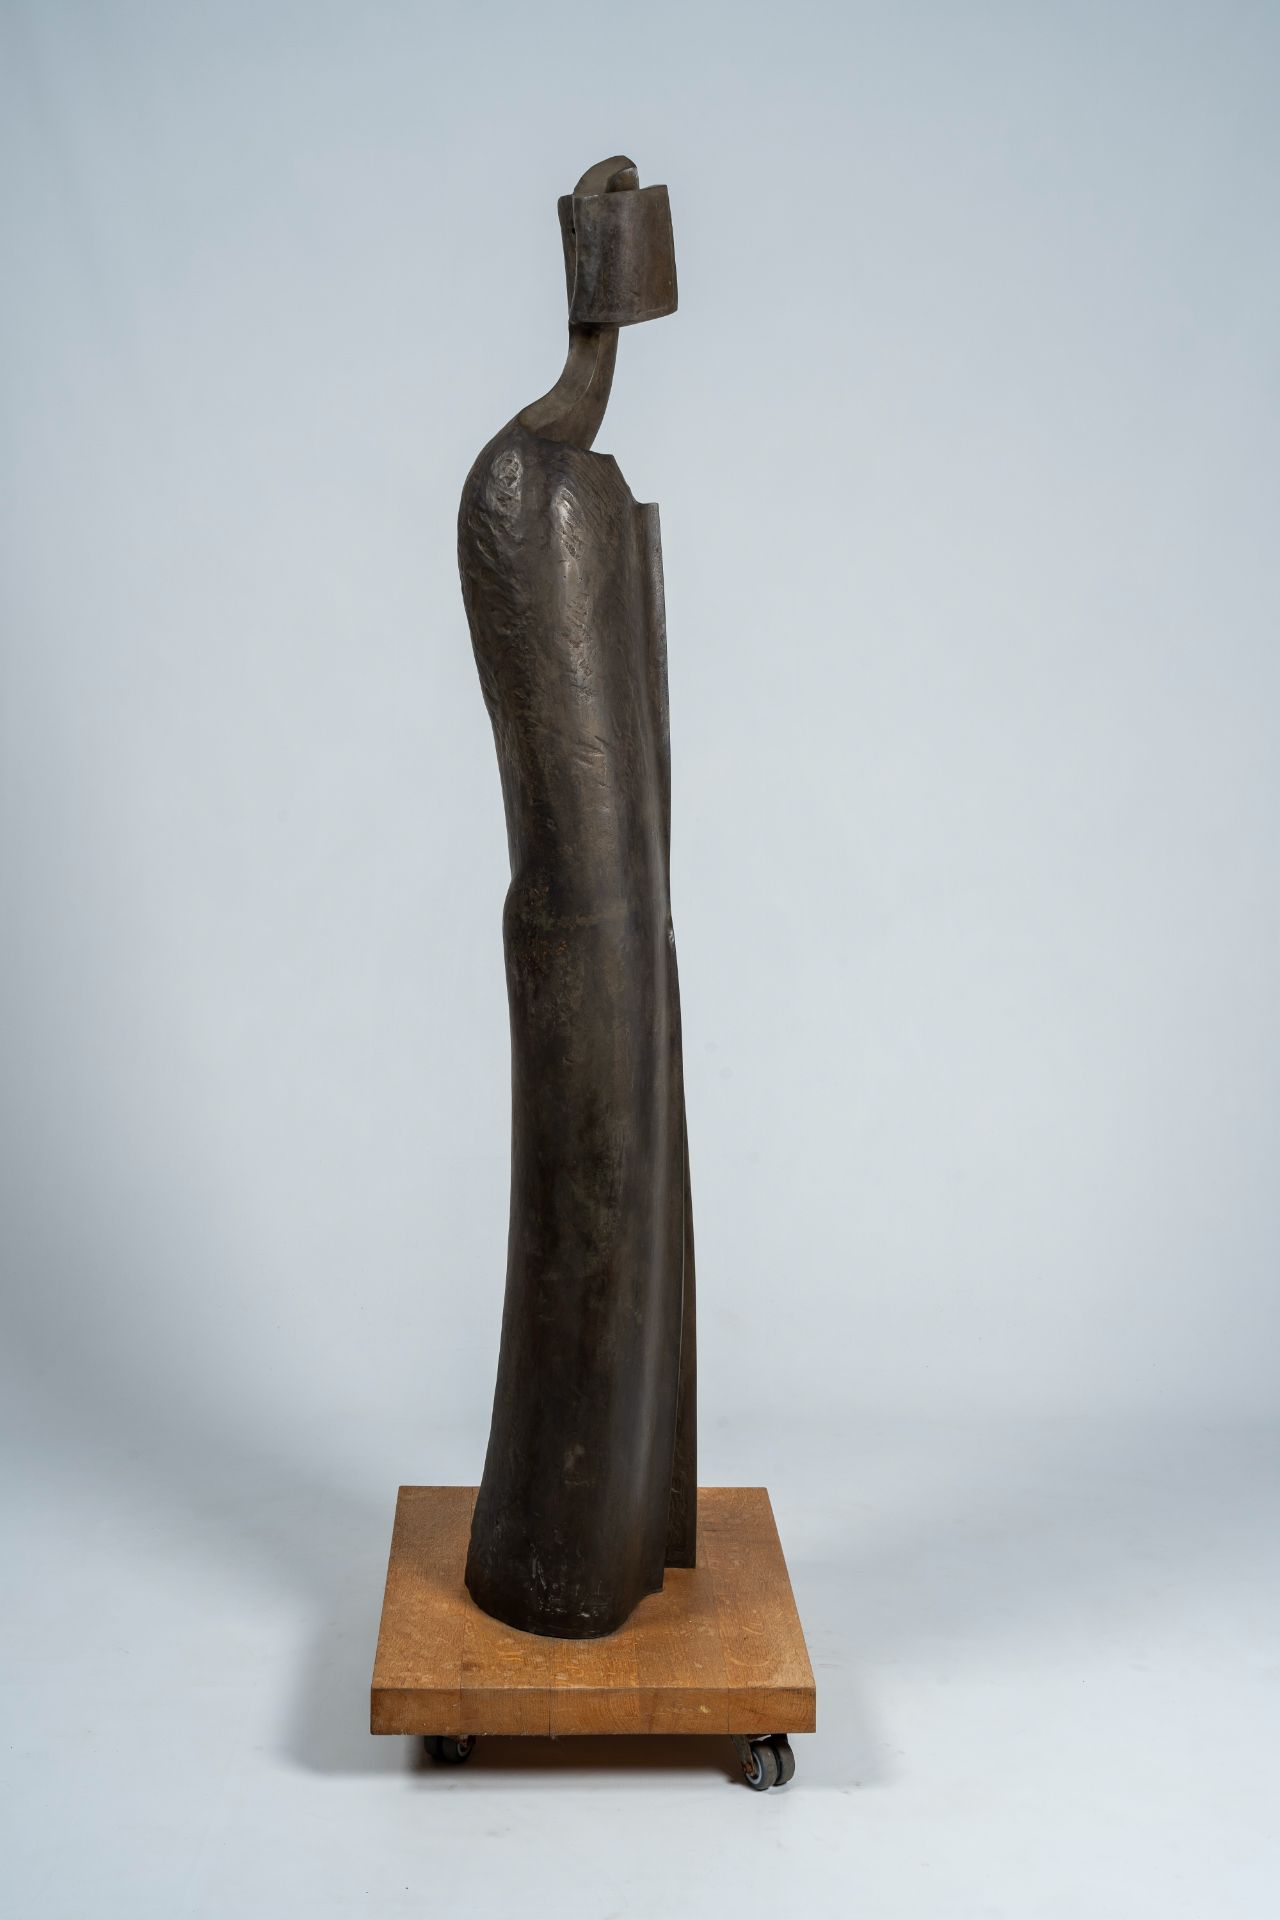 Jacques Tenenhaus (1947): 'The walking man', steel patinated bronze, foundry Landowski, ed. 1/8, dat - Image 4 of 9